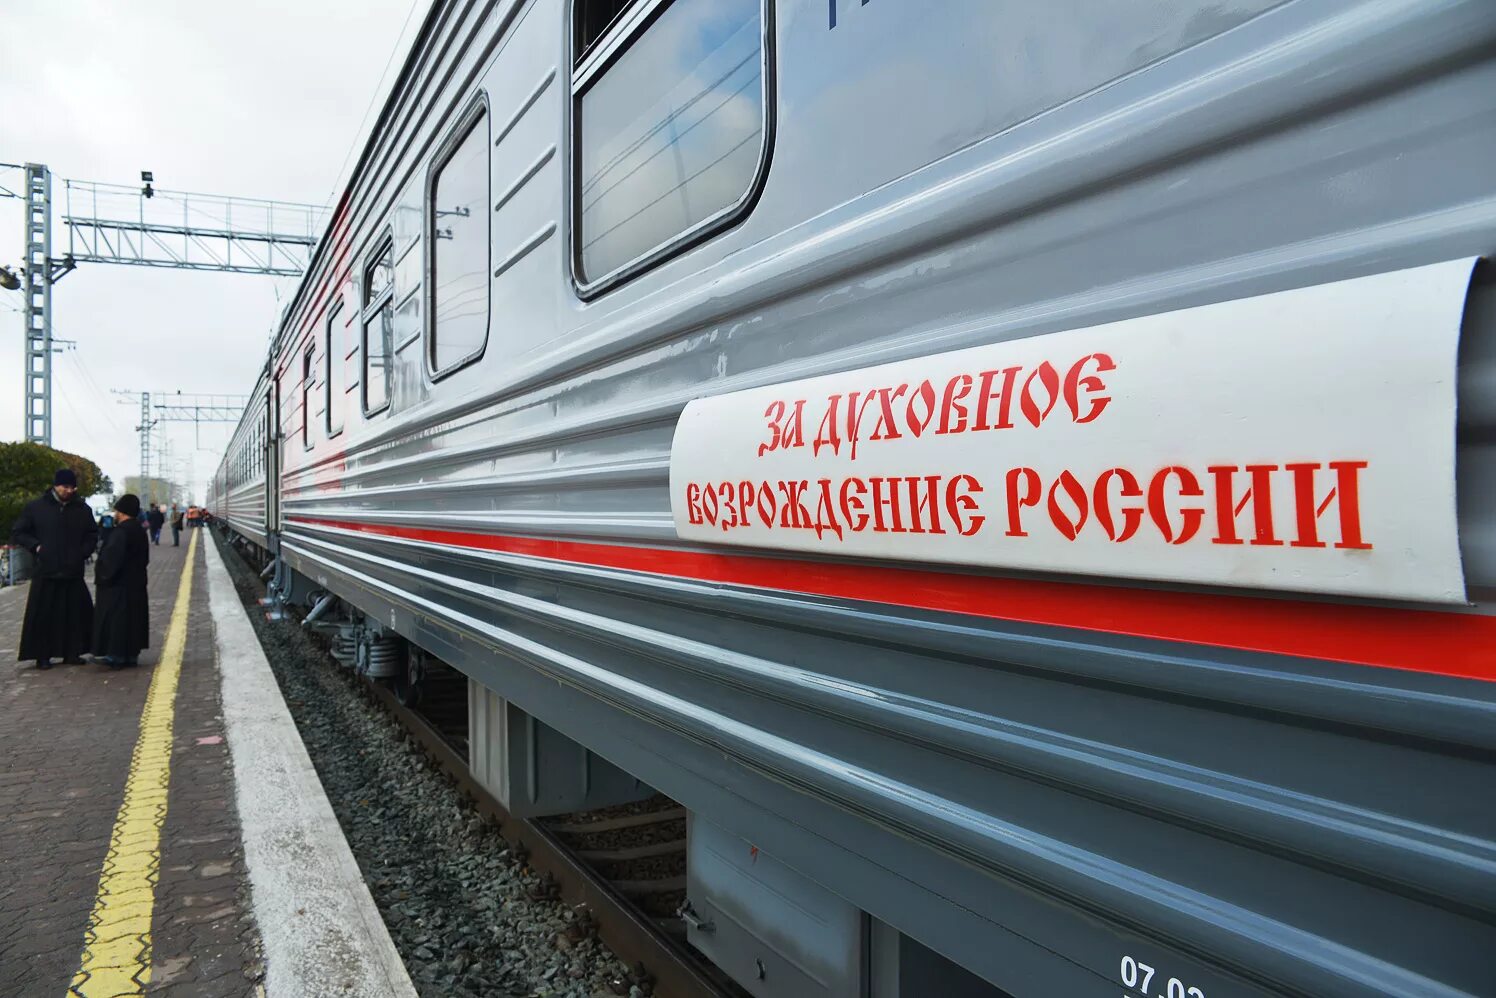 Поезд возрождение. За родину на поезде. Поезда 2018 года. Станция Краснозерское. Поезд Новосибирск Купино.